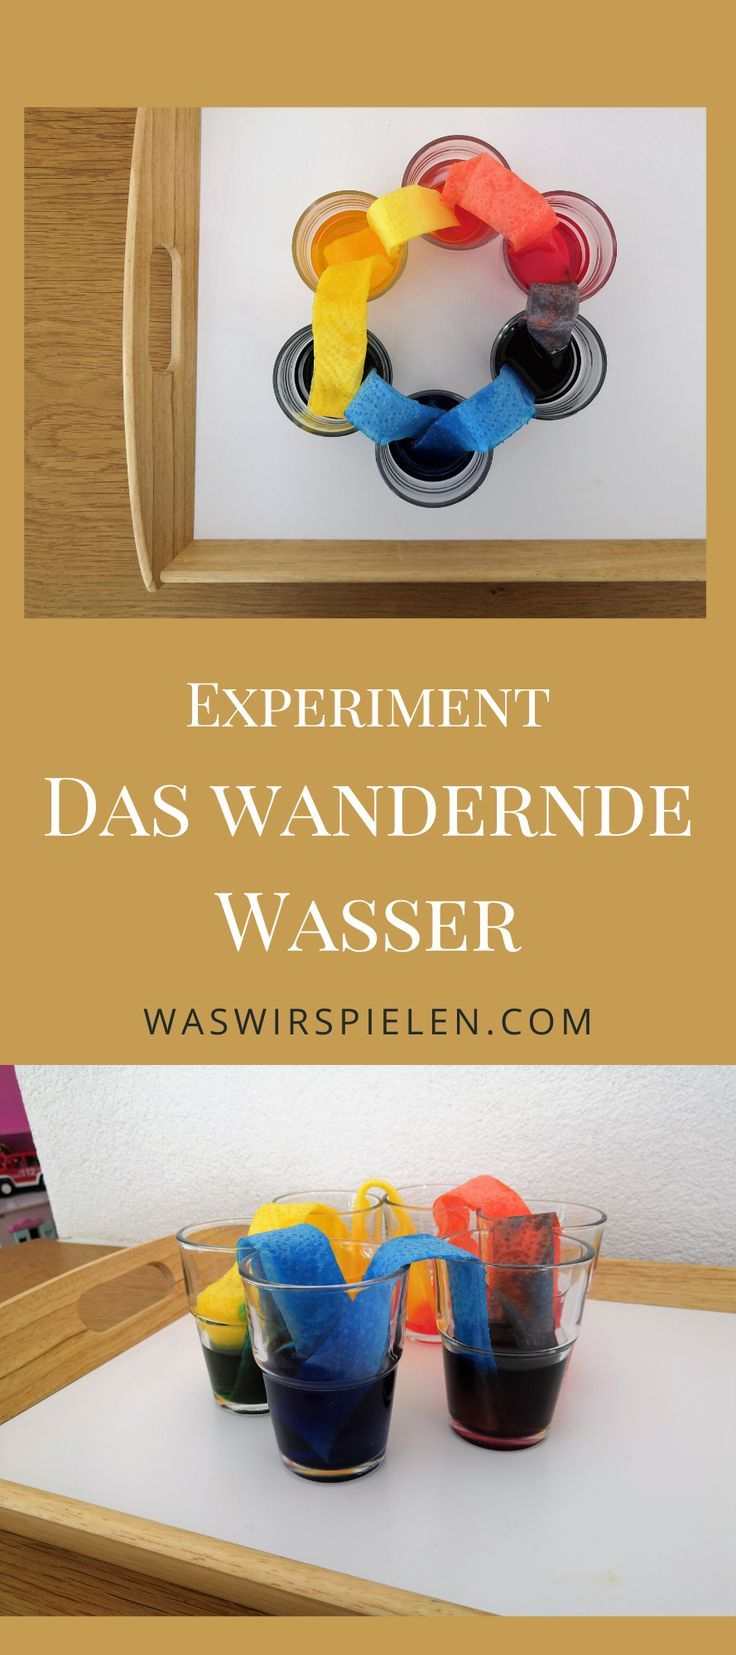 Experiment Für Kinder "Das Wandernde Wasser" In 2020 avec Experimente Mit Wasser Grundschule